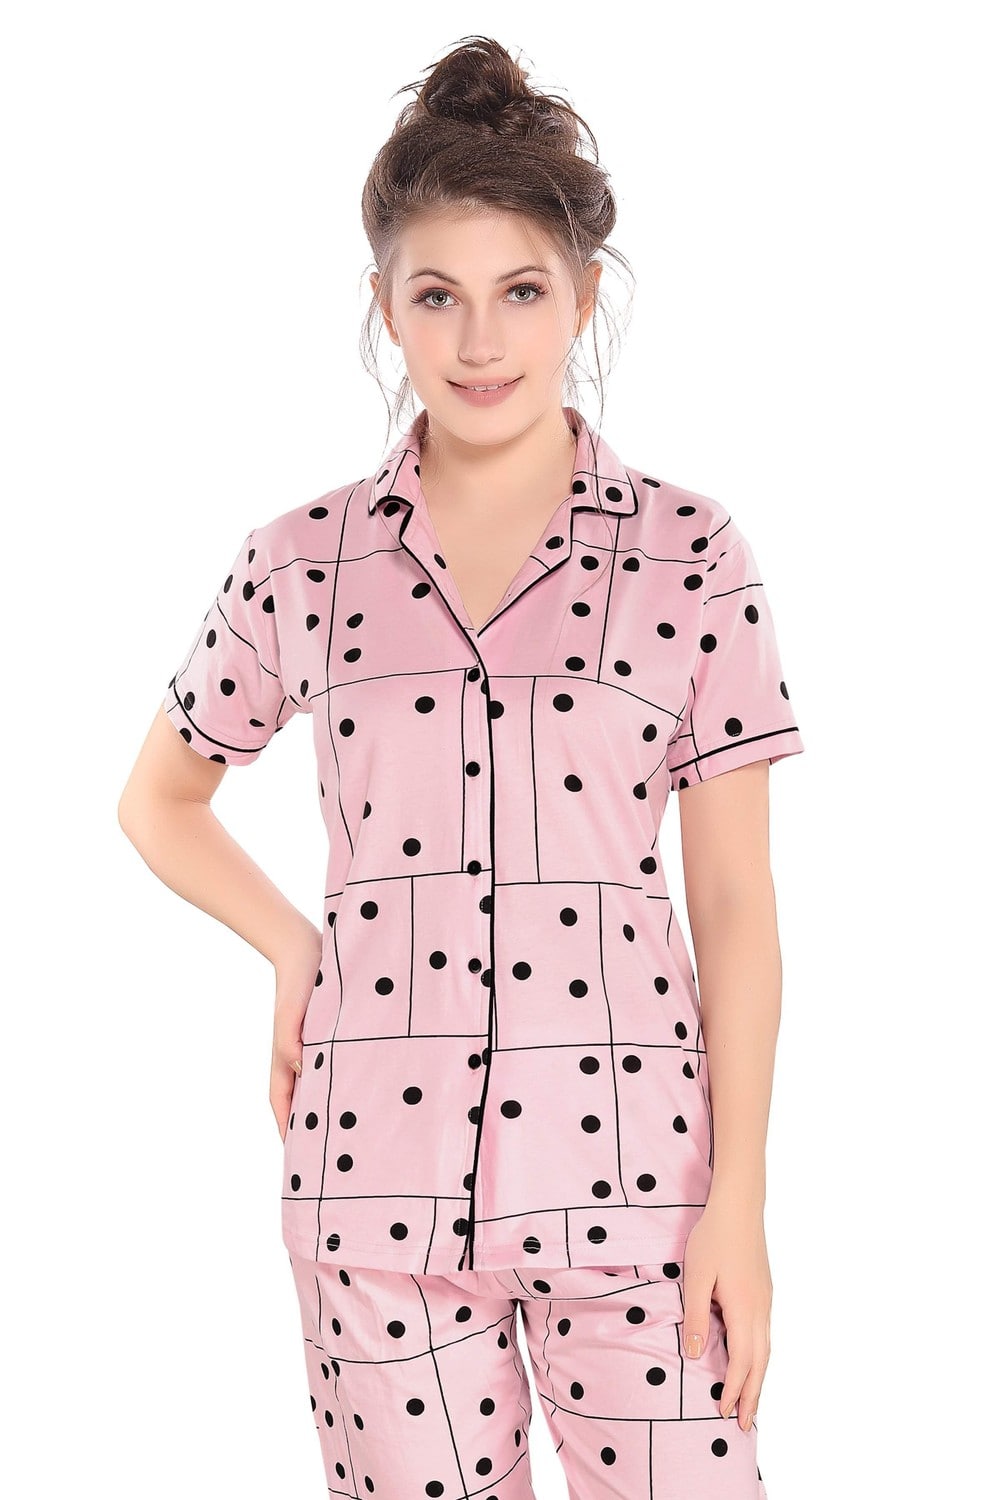 Pierre Donna Women's Cotton Pajama set With Pants - Women Sleepwear Pink Color - Dealz Souq